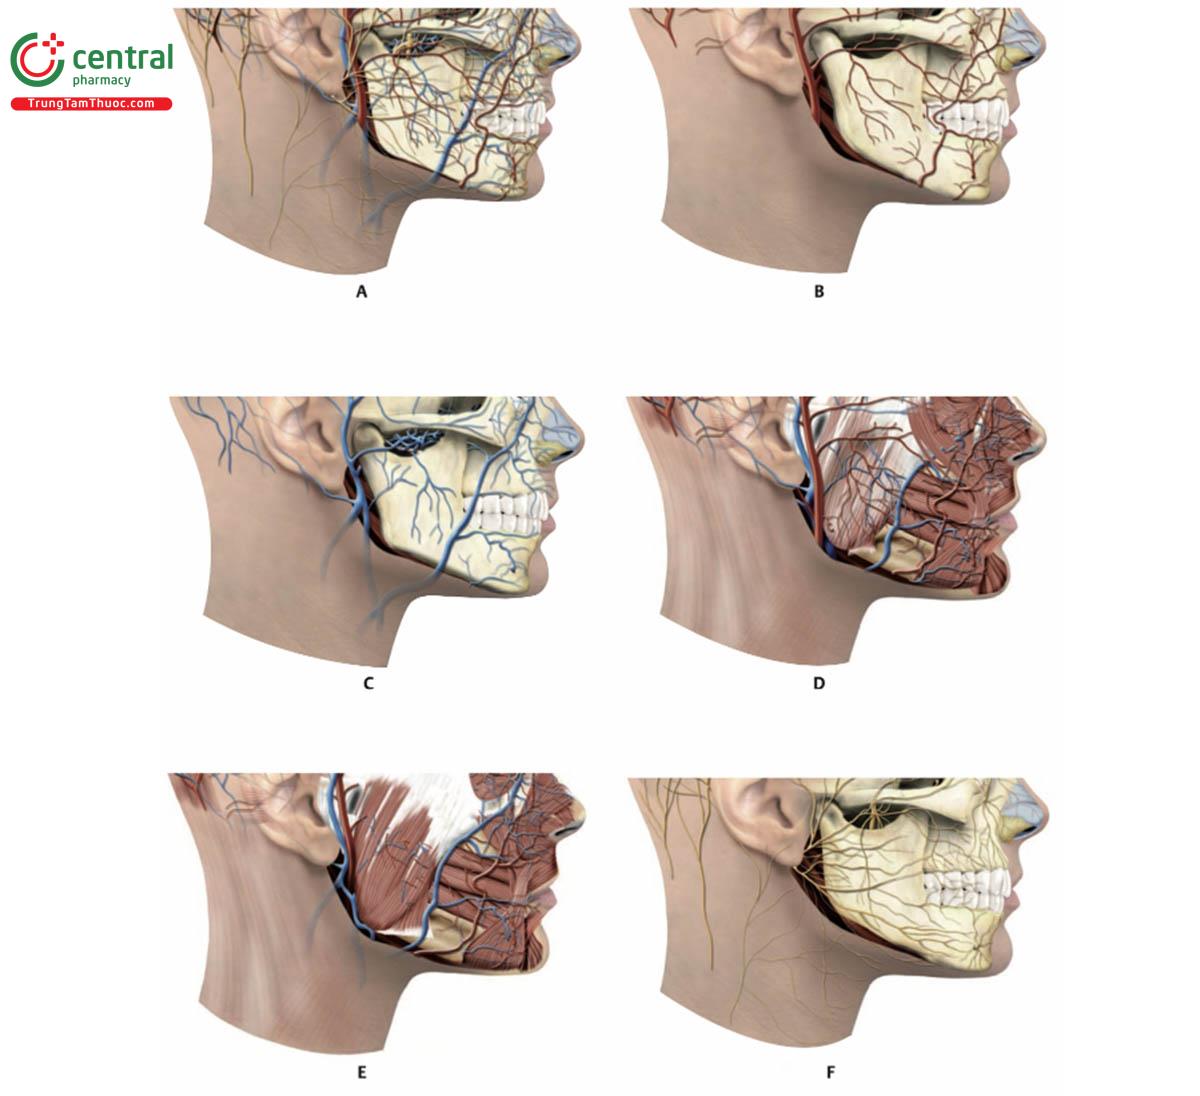 Hình 17.6 Hình nghiêng bên phải của 1/3 dưới khuôn mặt. A. Sự phân bố mạch máu và thần kinh. B. Động mạch. C. Tĩnh mạch. D. Động mạch và tĩnh mạch được tích hợp với các cơ: cơ nâng môi, cơ hạ góc miệng,  cơ hạ môi, cơ cằm, cơ mút và cơ cắn. E. Sau khi bỏ cơ gò má lớn. F. Thần kinh.